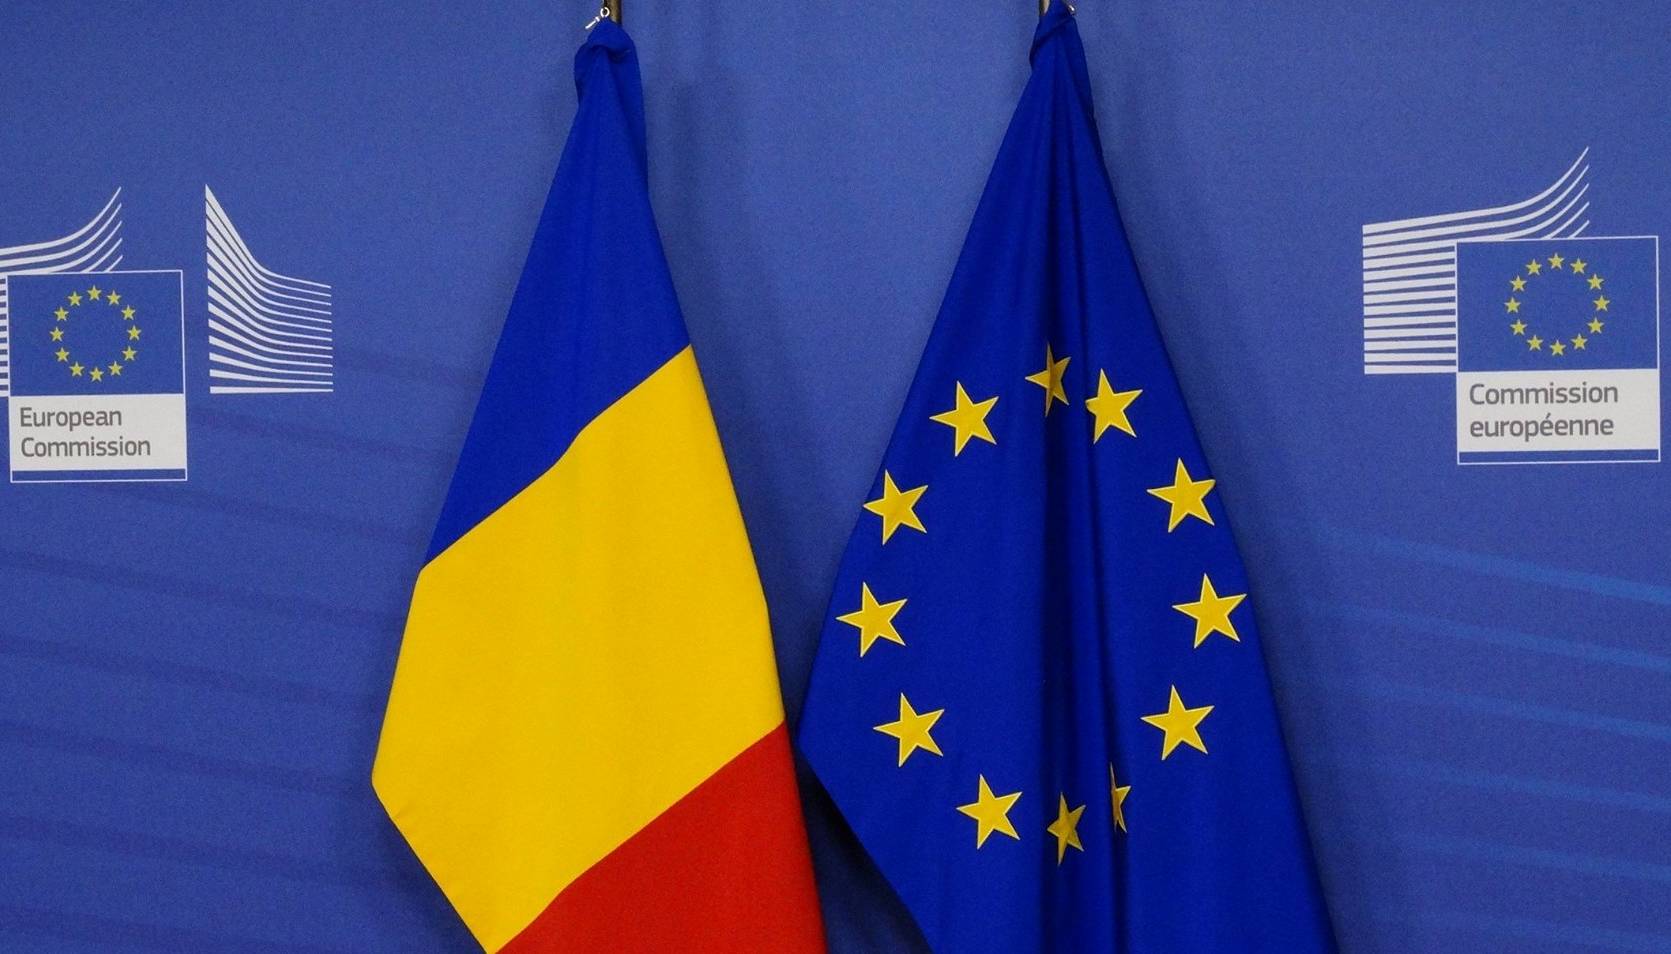 Commissione europea L'Ucraina dovrebbe ricevere lo status di paese candidato il più presto possibile